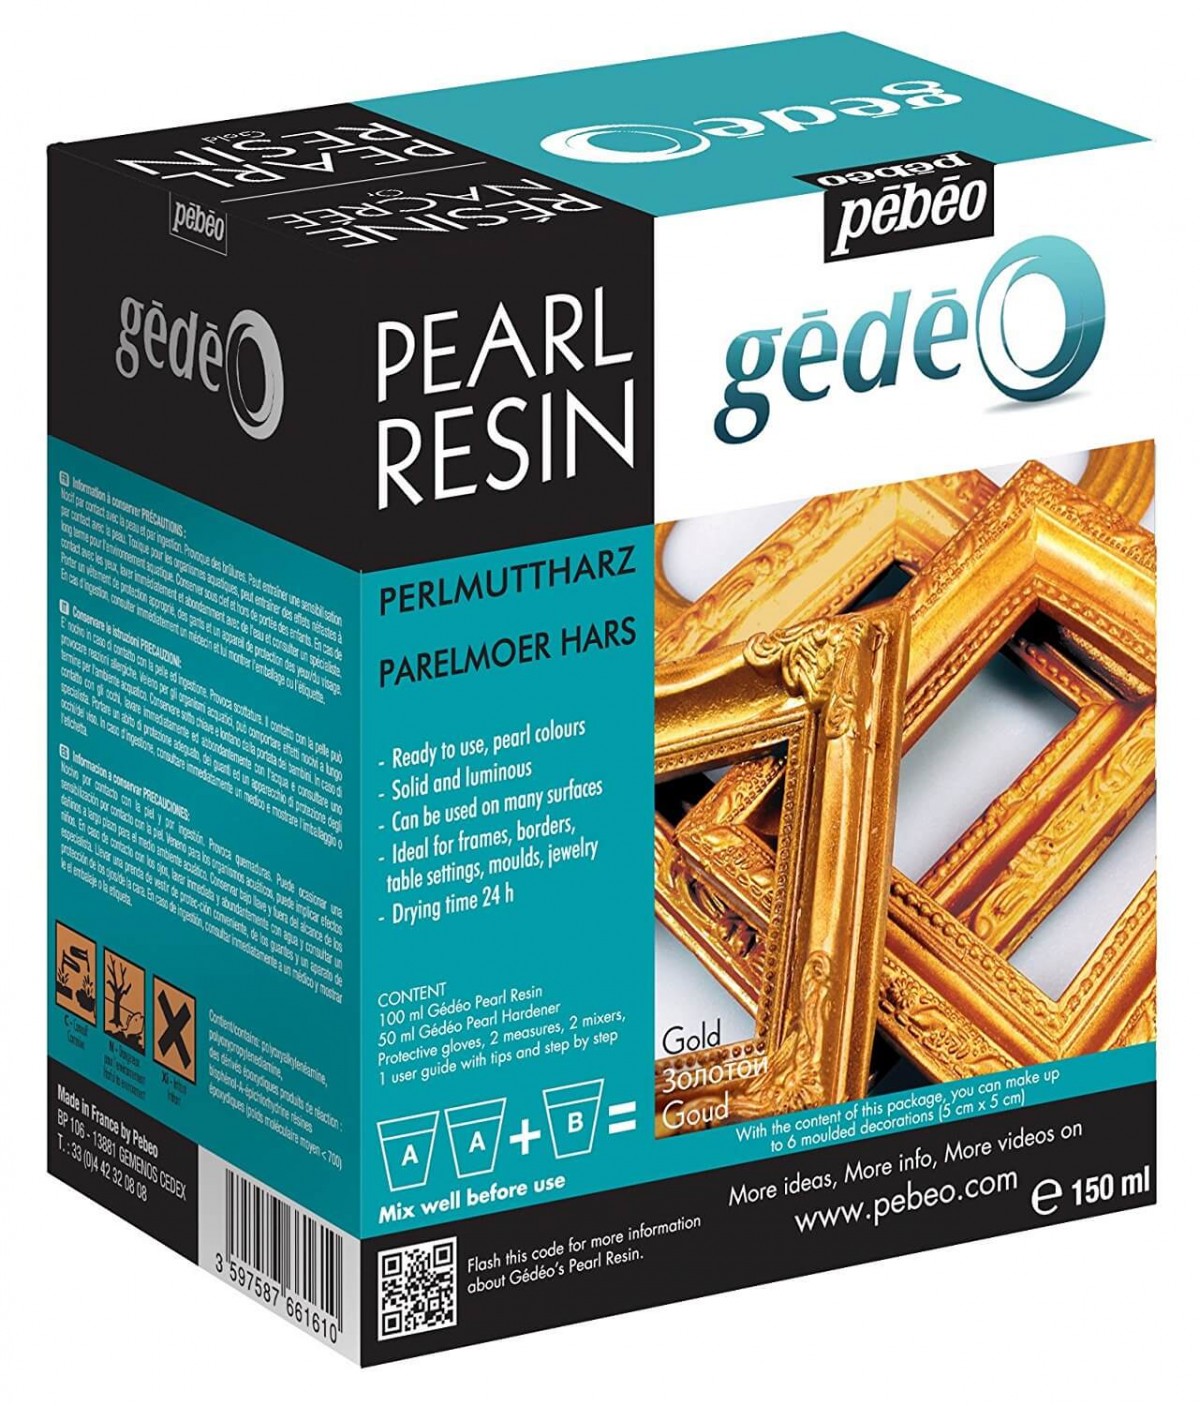 Pebeo Gedeo 150ml Pearl Resine Sedef Reçine Gold